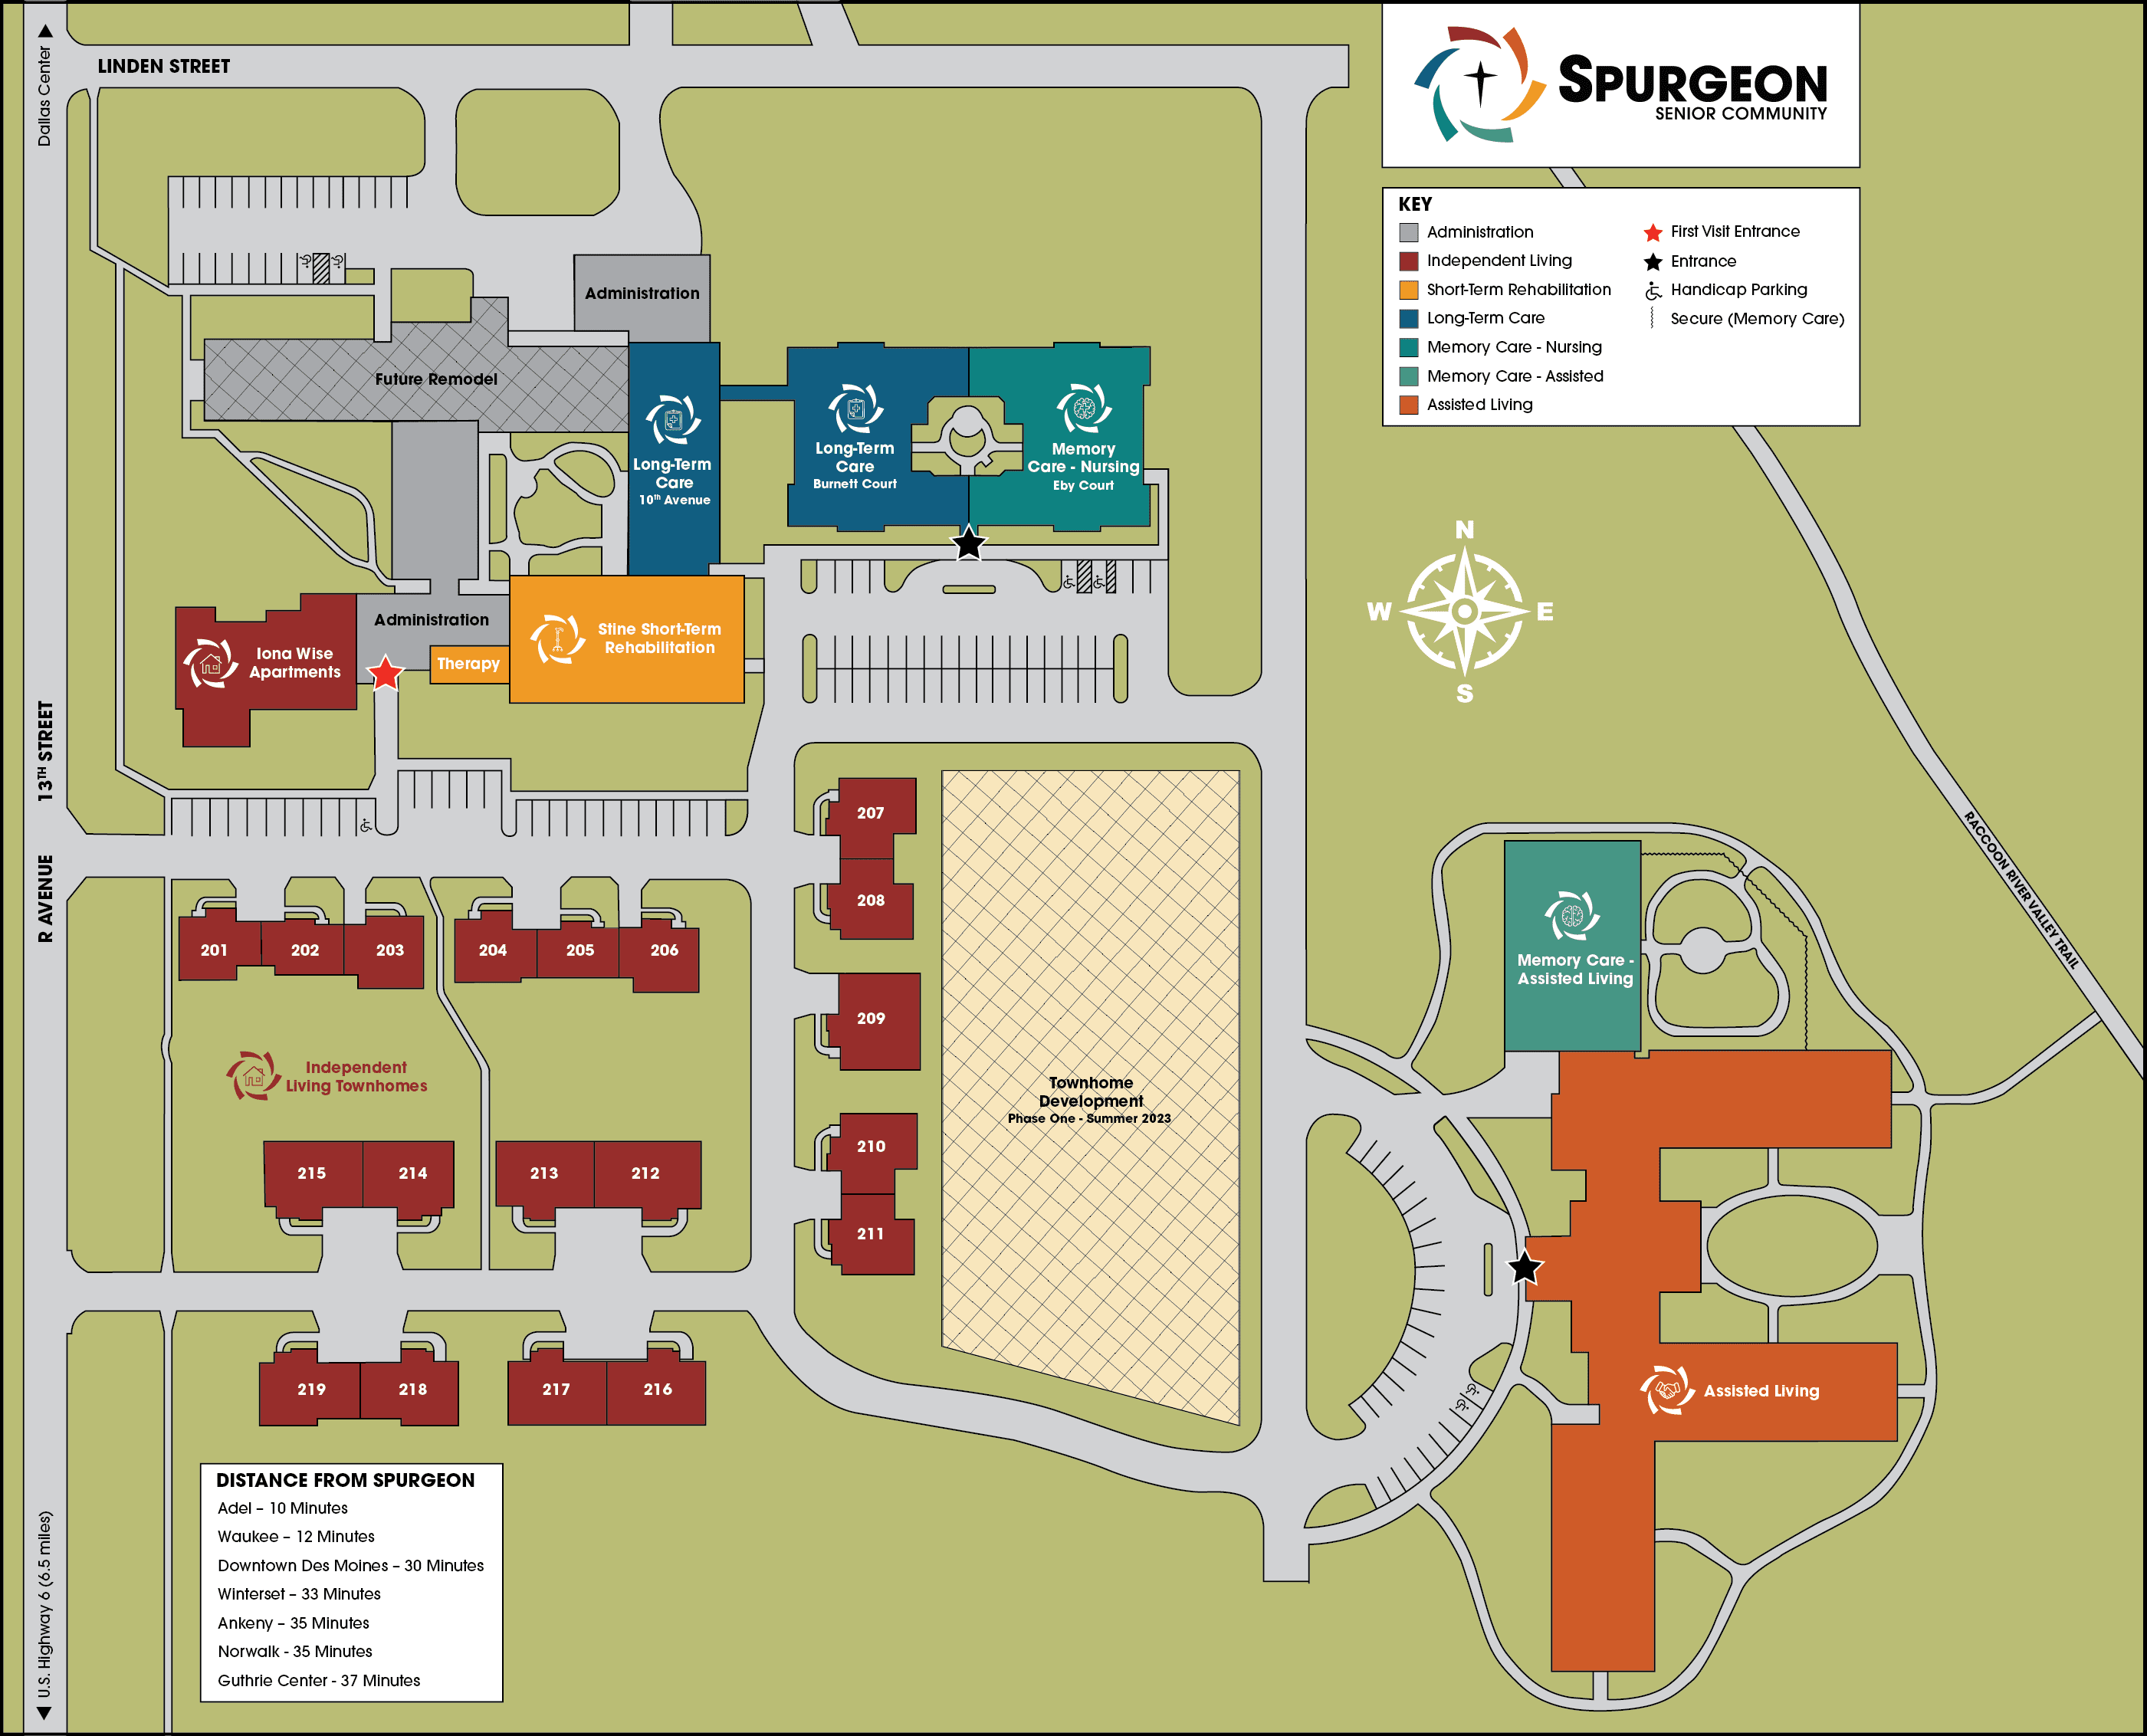 Spurgeon Senior Community Campus Map